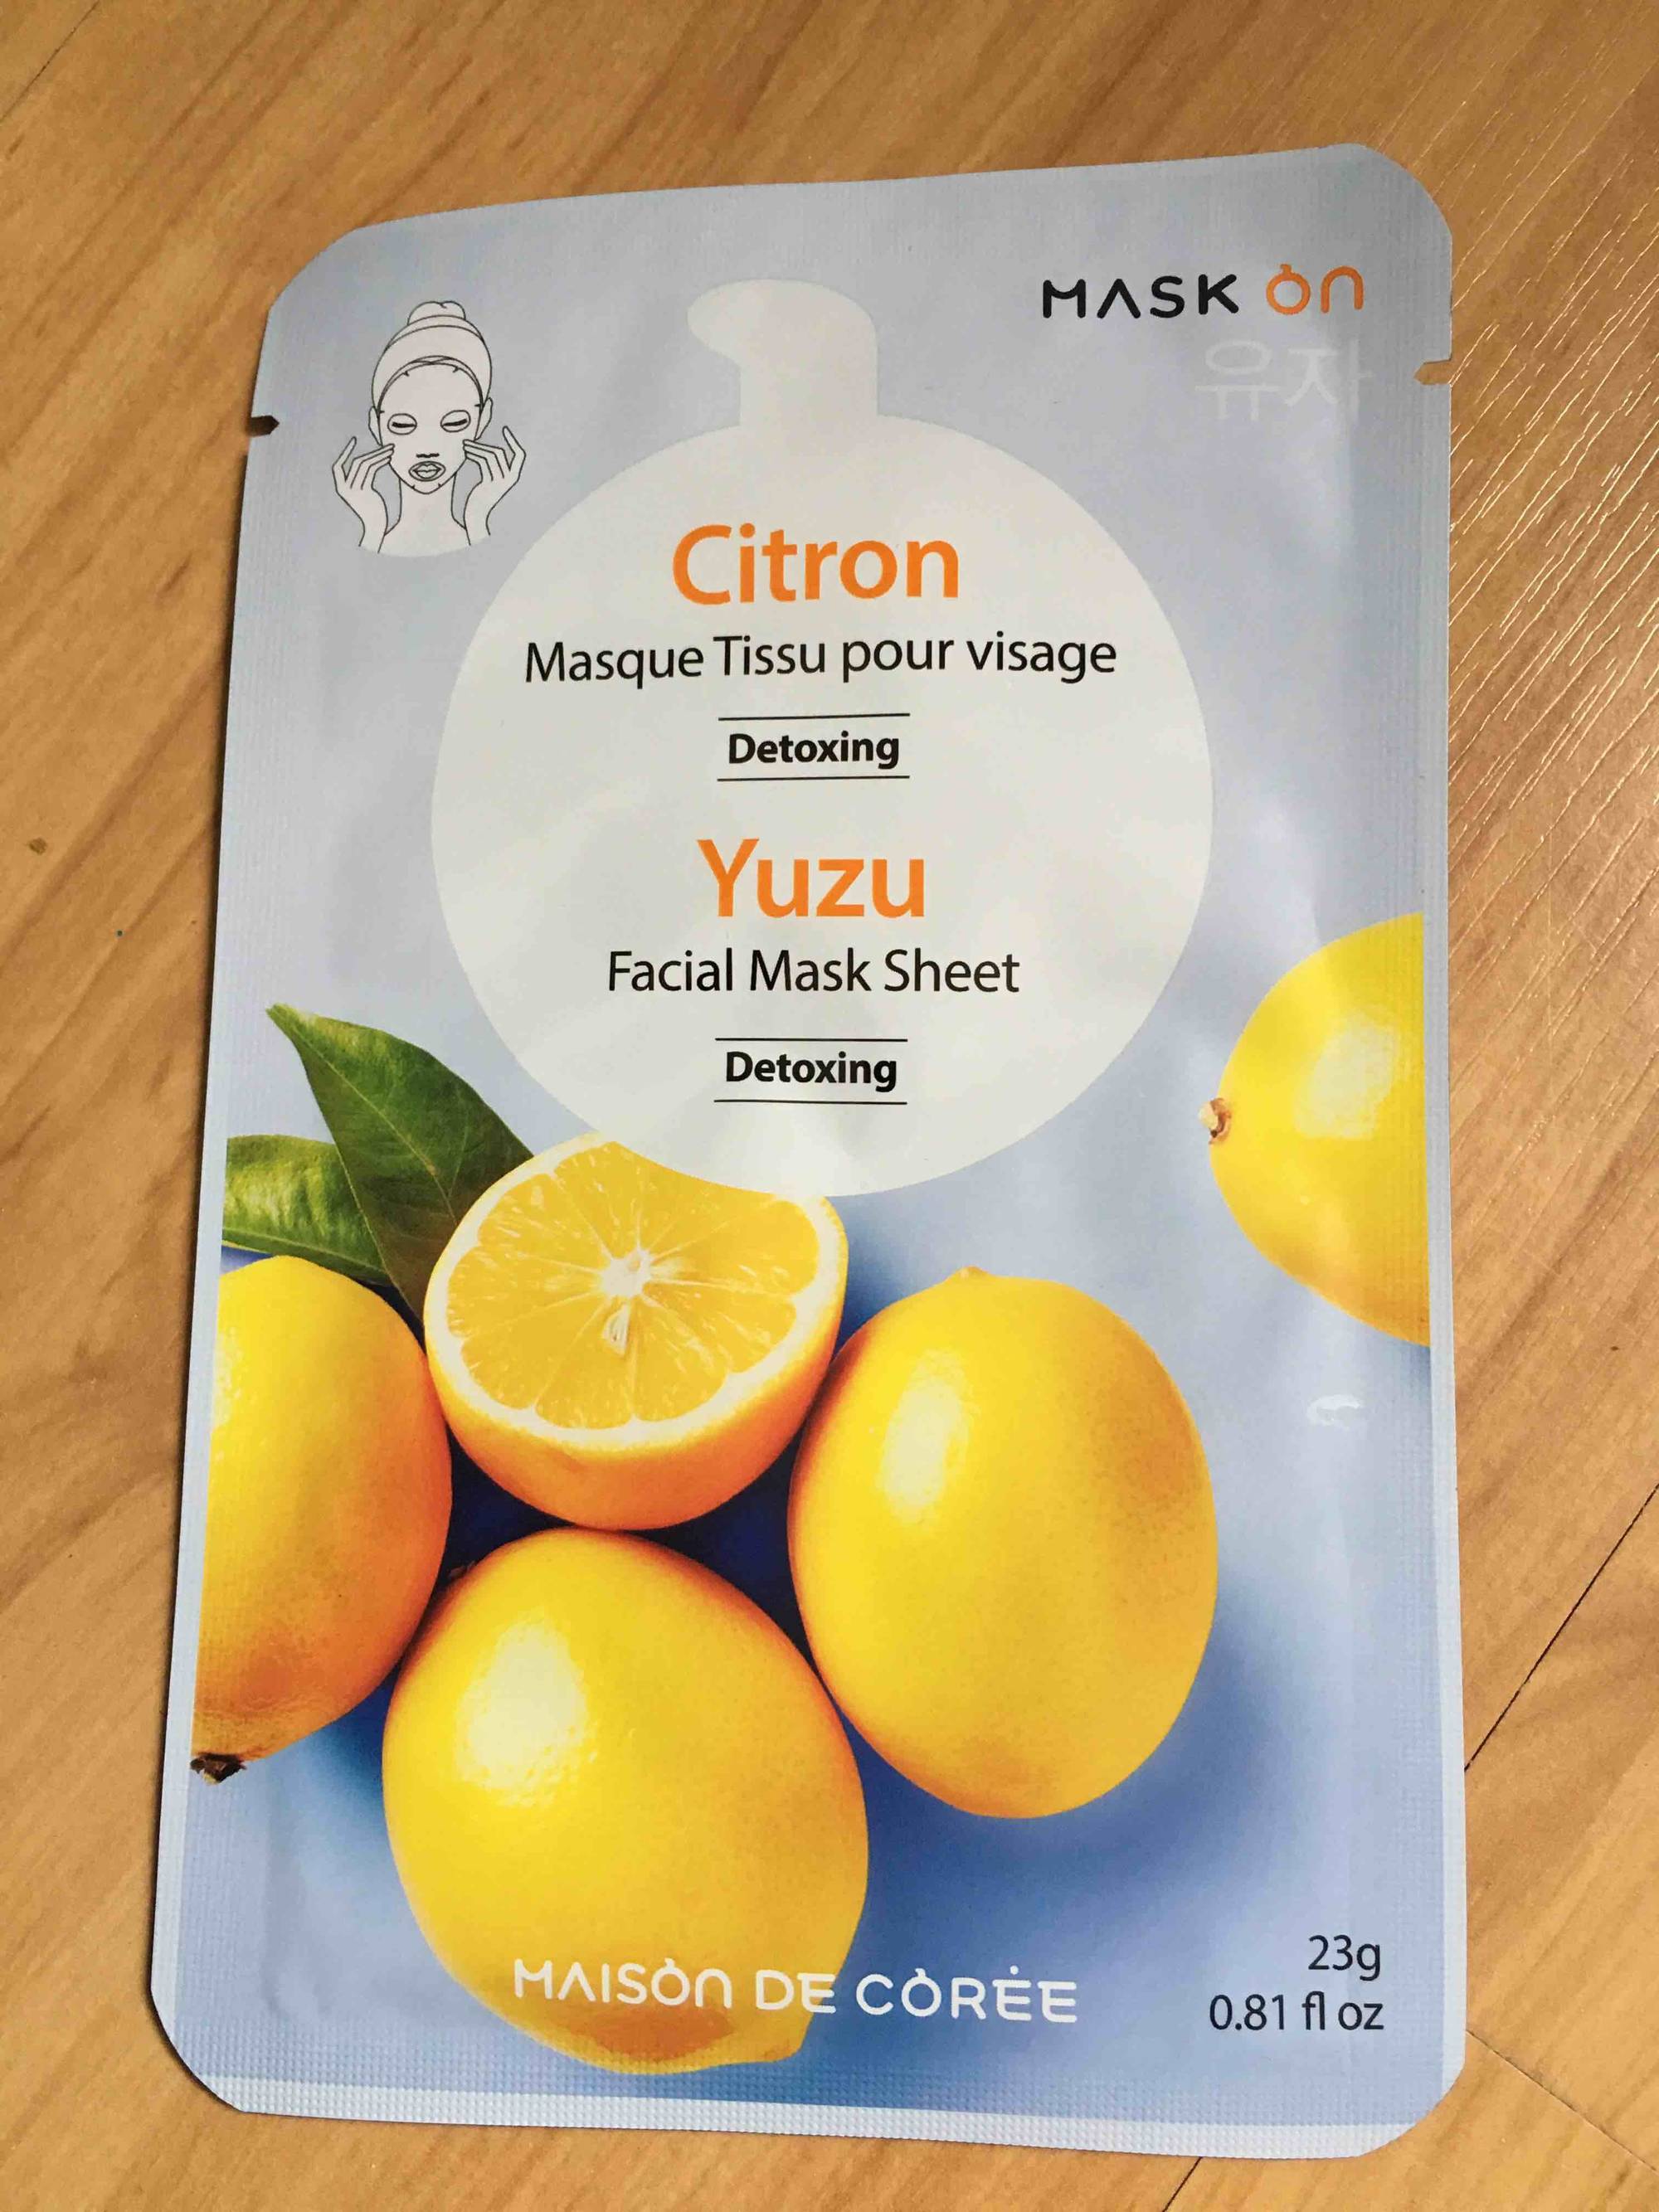 MAISON DE CORÉE - Citron - Masque tissu pour visage